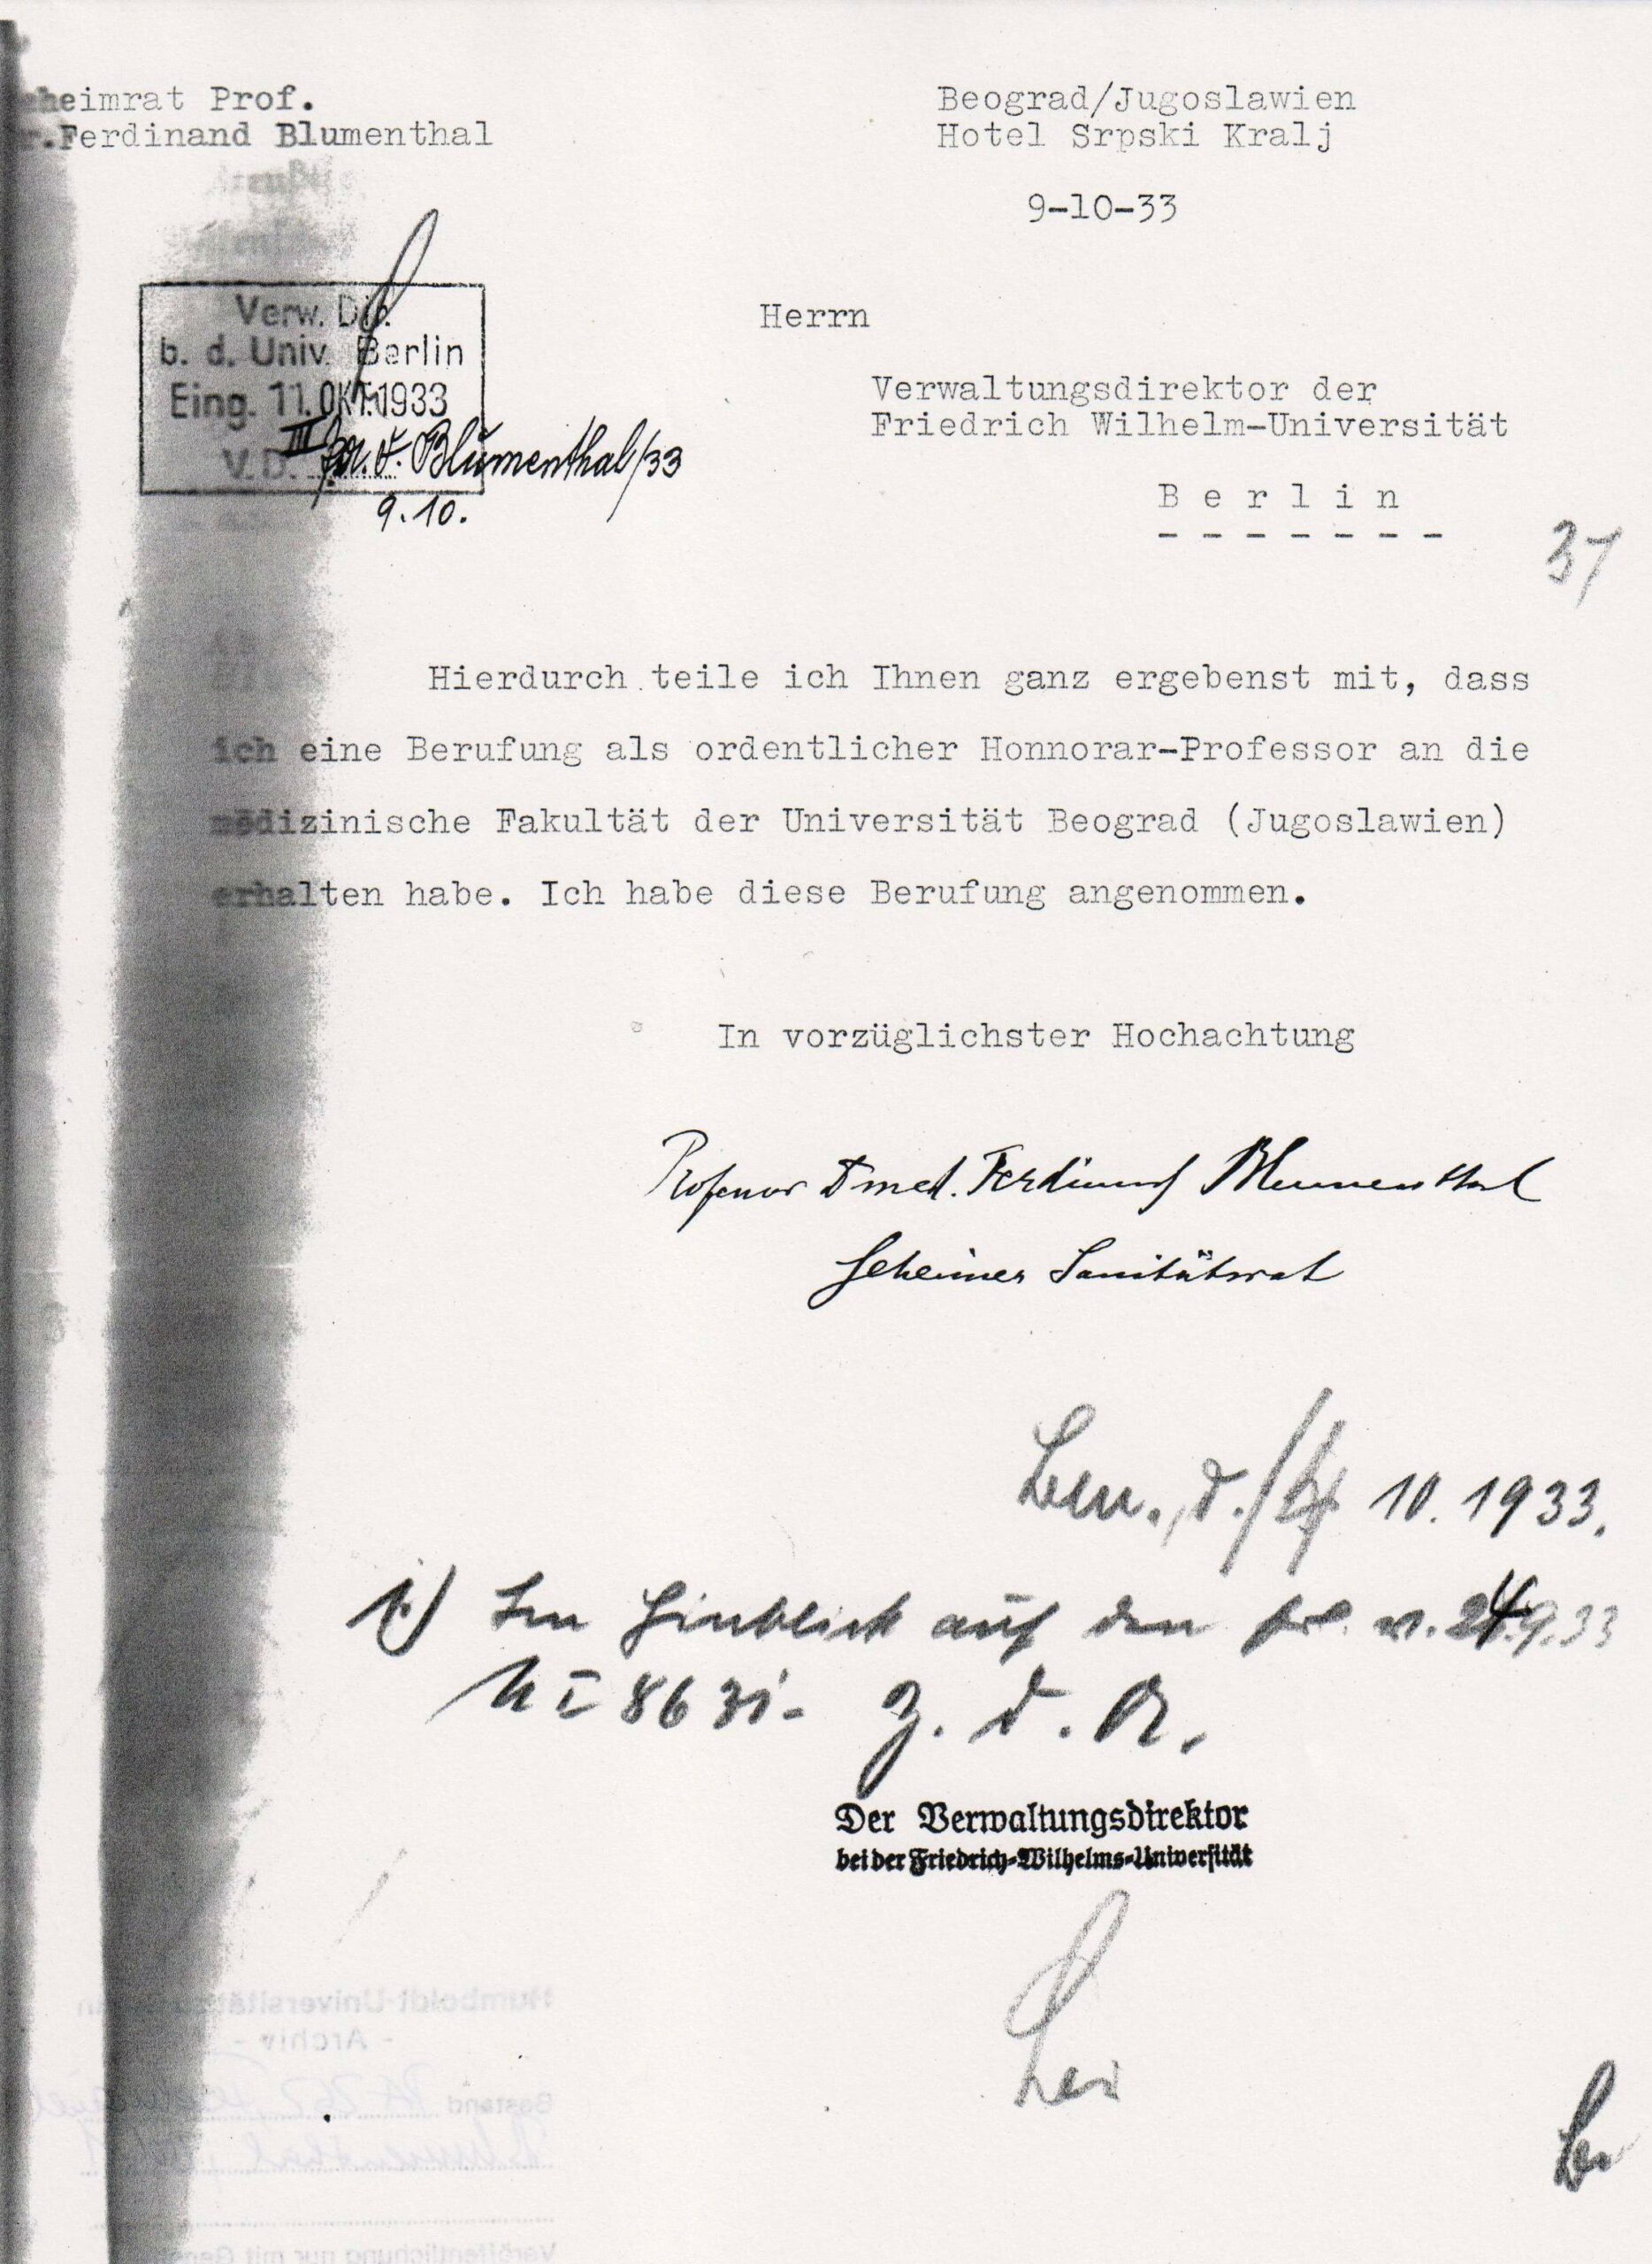 Schreiben Blumenthals an die Berliner Universität über seine Berufung nach Belgrad, Oktober 1933, Archiv Humboldt-Universität Berlin, Personalakte Blumenthal